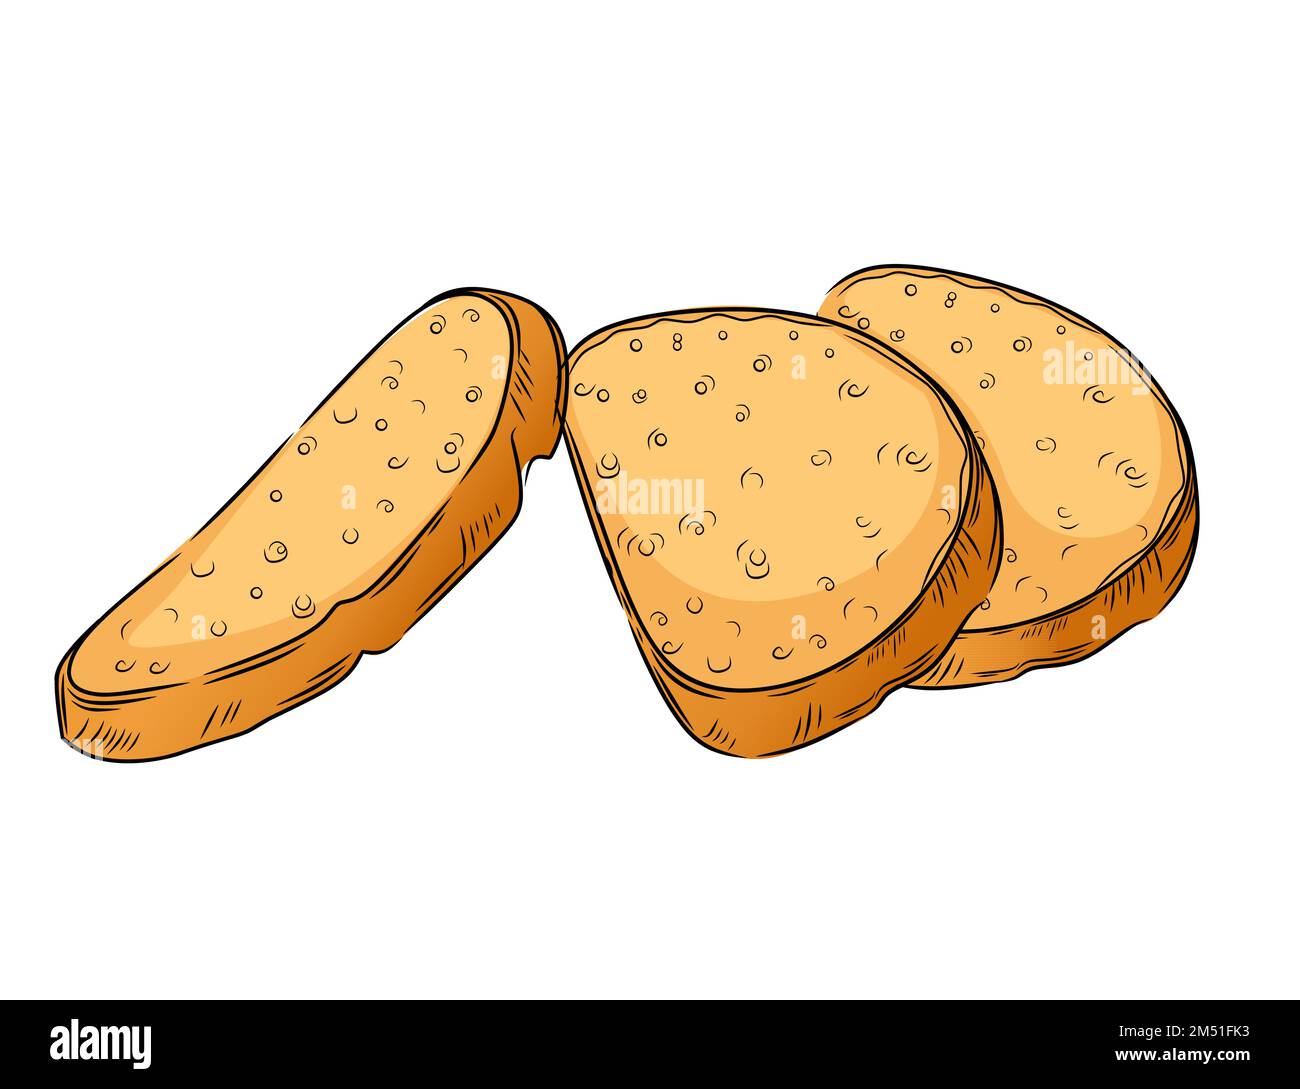 Morceau de pain blanc coupé en tranches frais et savoureux illustration vectorielle de style dessiné à la main isolée sur fond blanc Illustration de Vecteur